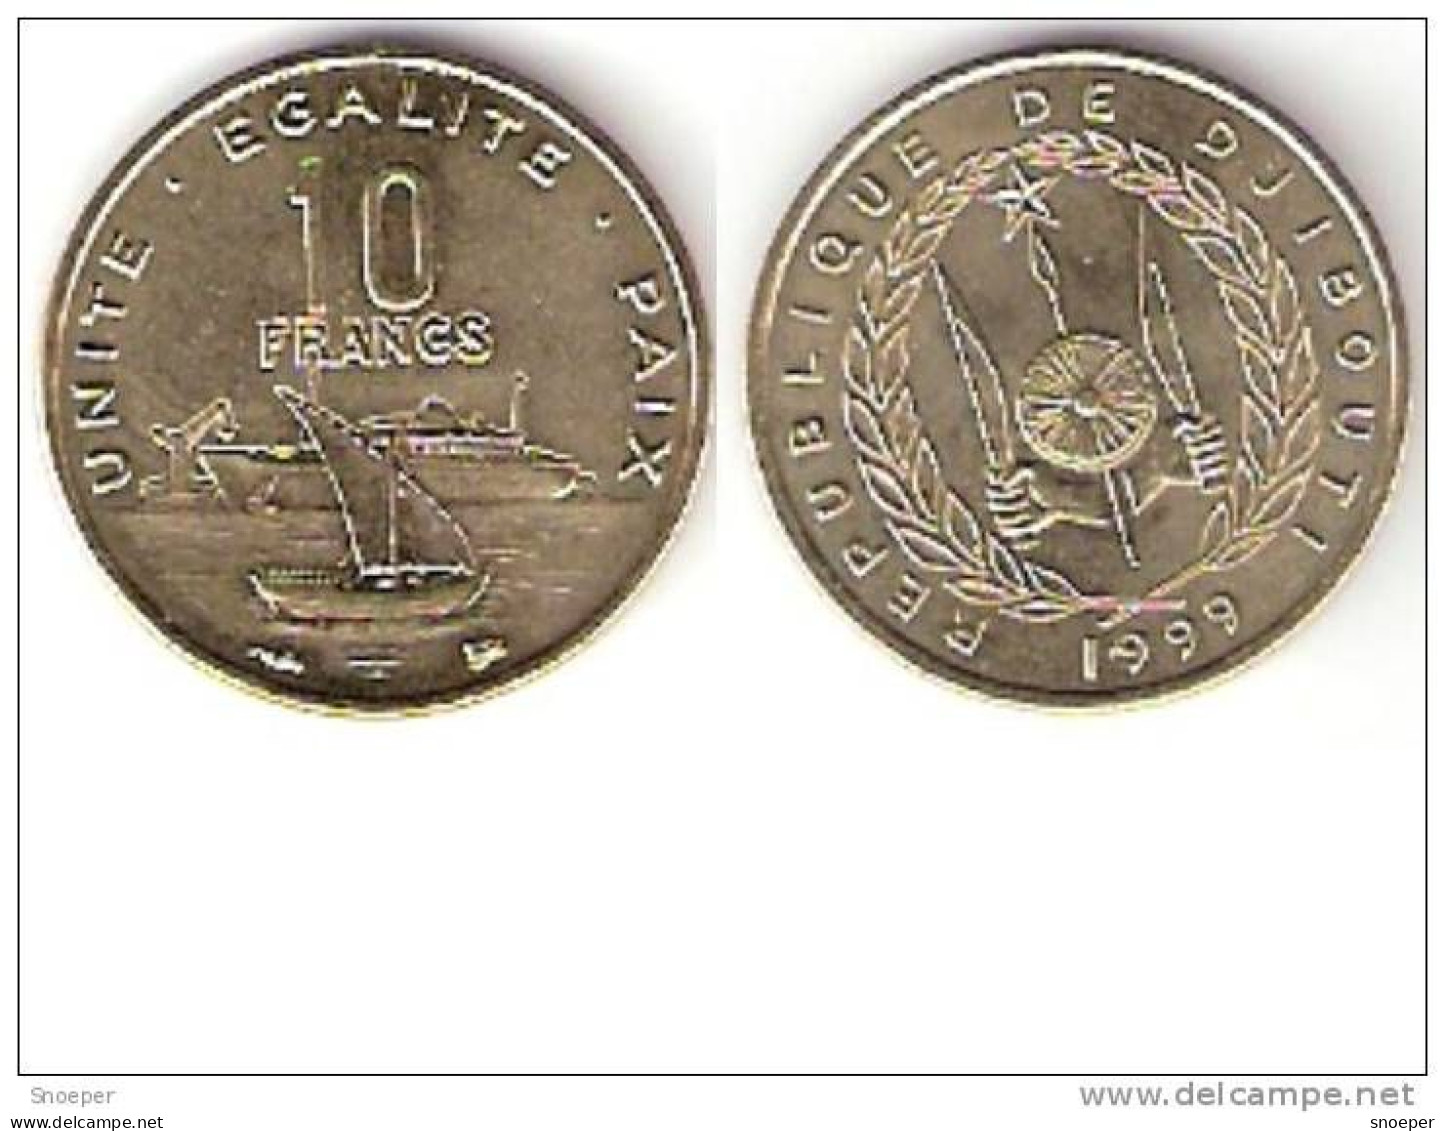 Djibouti 10 Francs 1999 Km 23 Unc  !!!!!!!!!onley In Sets !!catalog Val 15,00$ - Djibouti